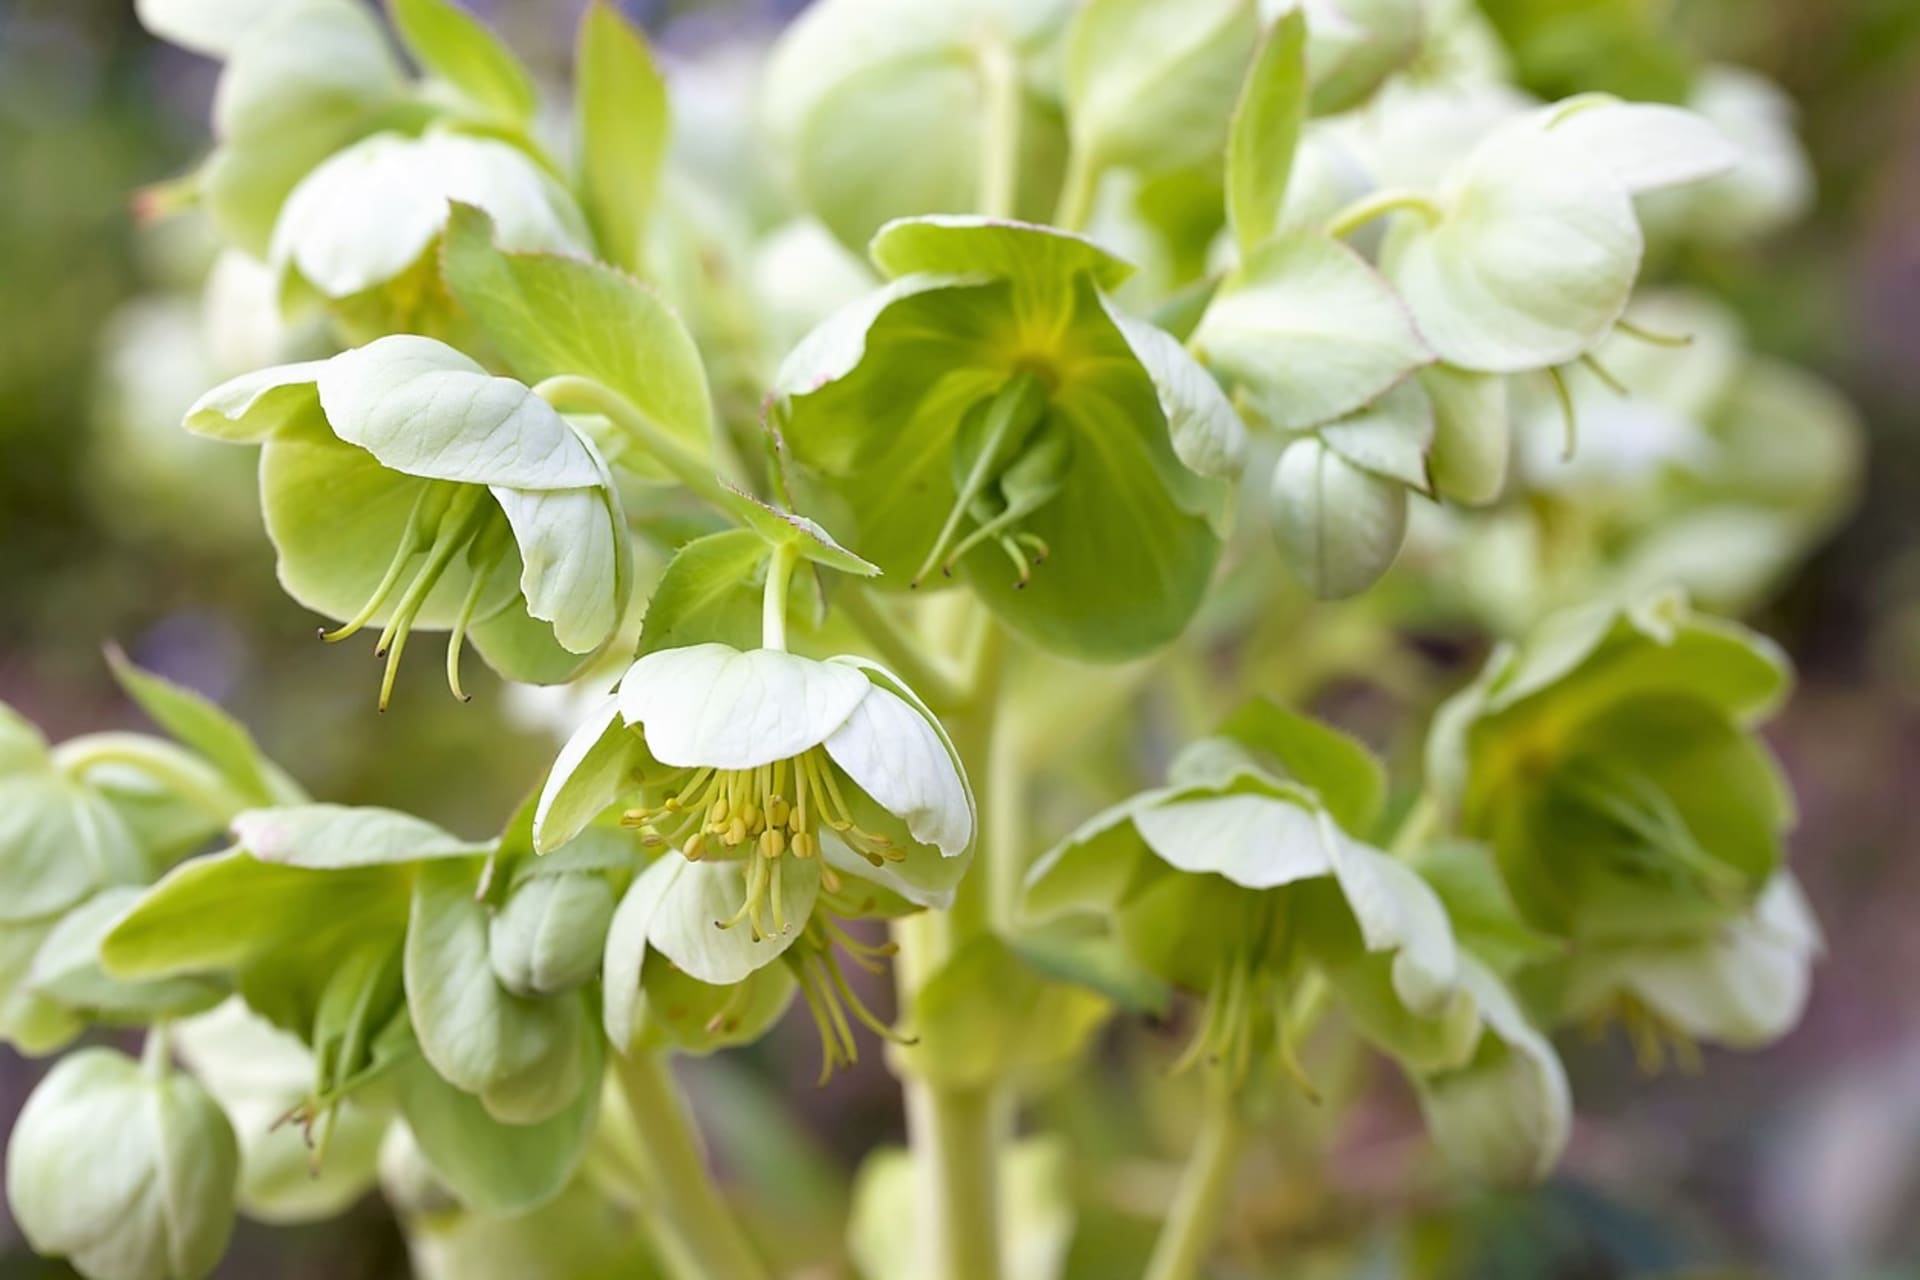 Dekorativní čemeřice zelená (Helleborus viridis) má převislé žlutozelené květy, které rozkvétají v březnu až dubnu.